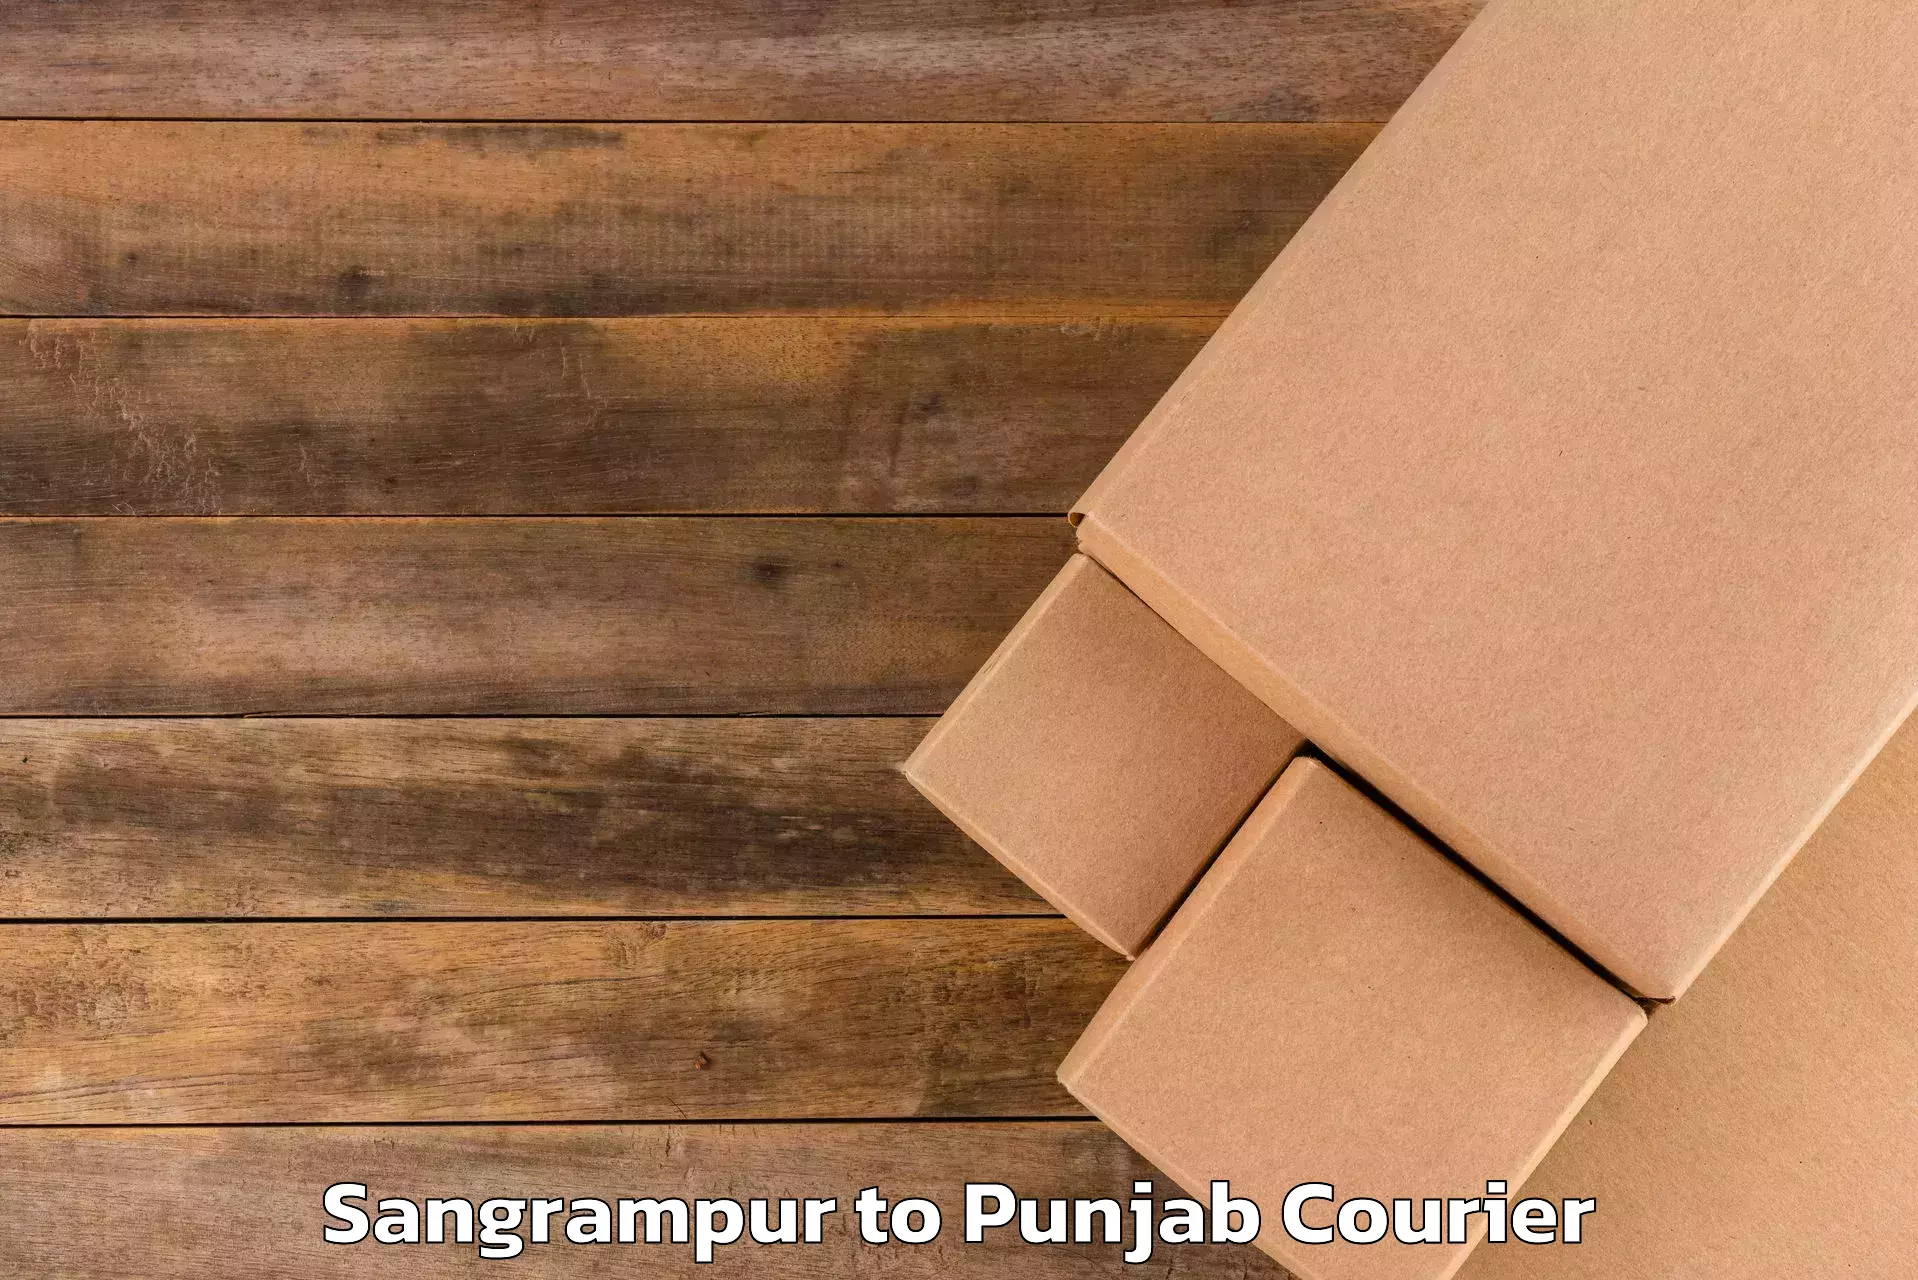 Urgent luggage shipment Sangrampur to Jalandhar